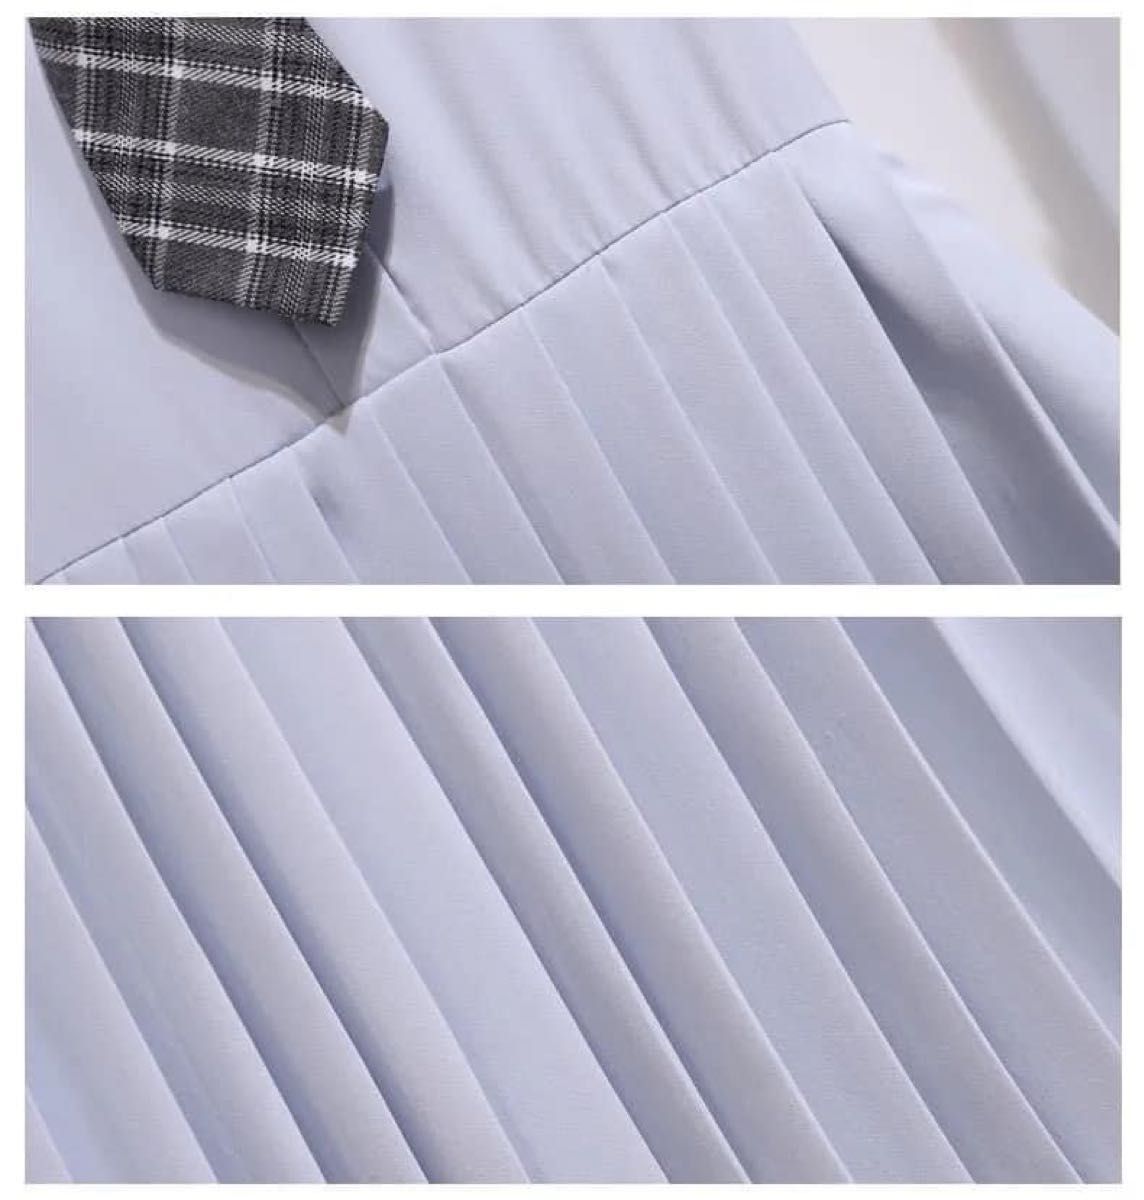 人気商品 女の子 プリーツ ワンピース 水色 ネクタイ付き 清楚 上品 正装 バックリボン 半袖ワンピース 160